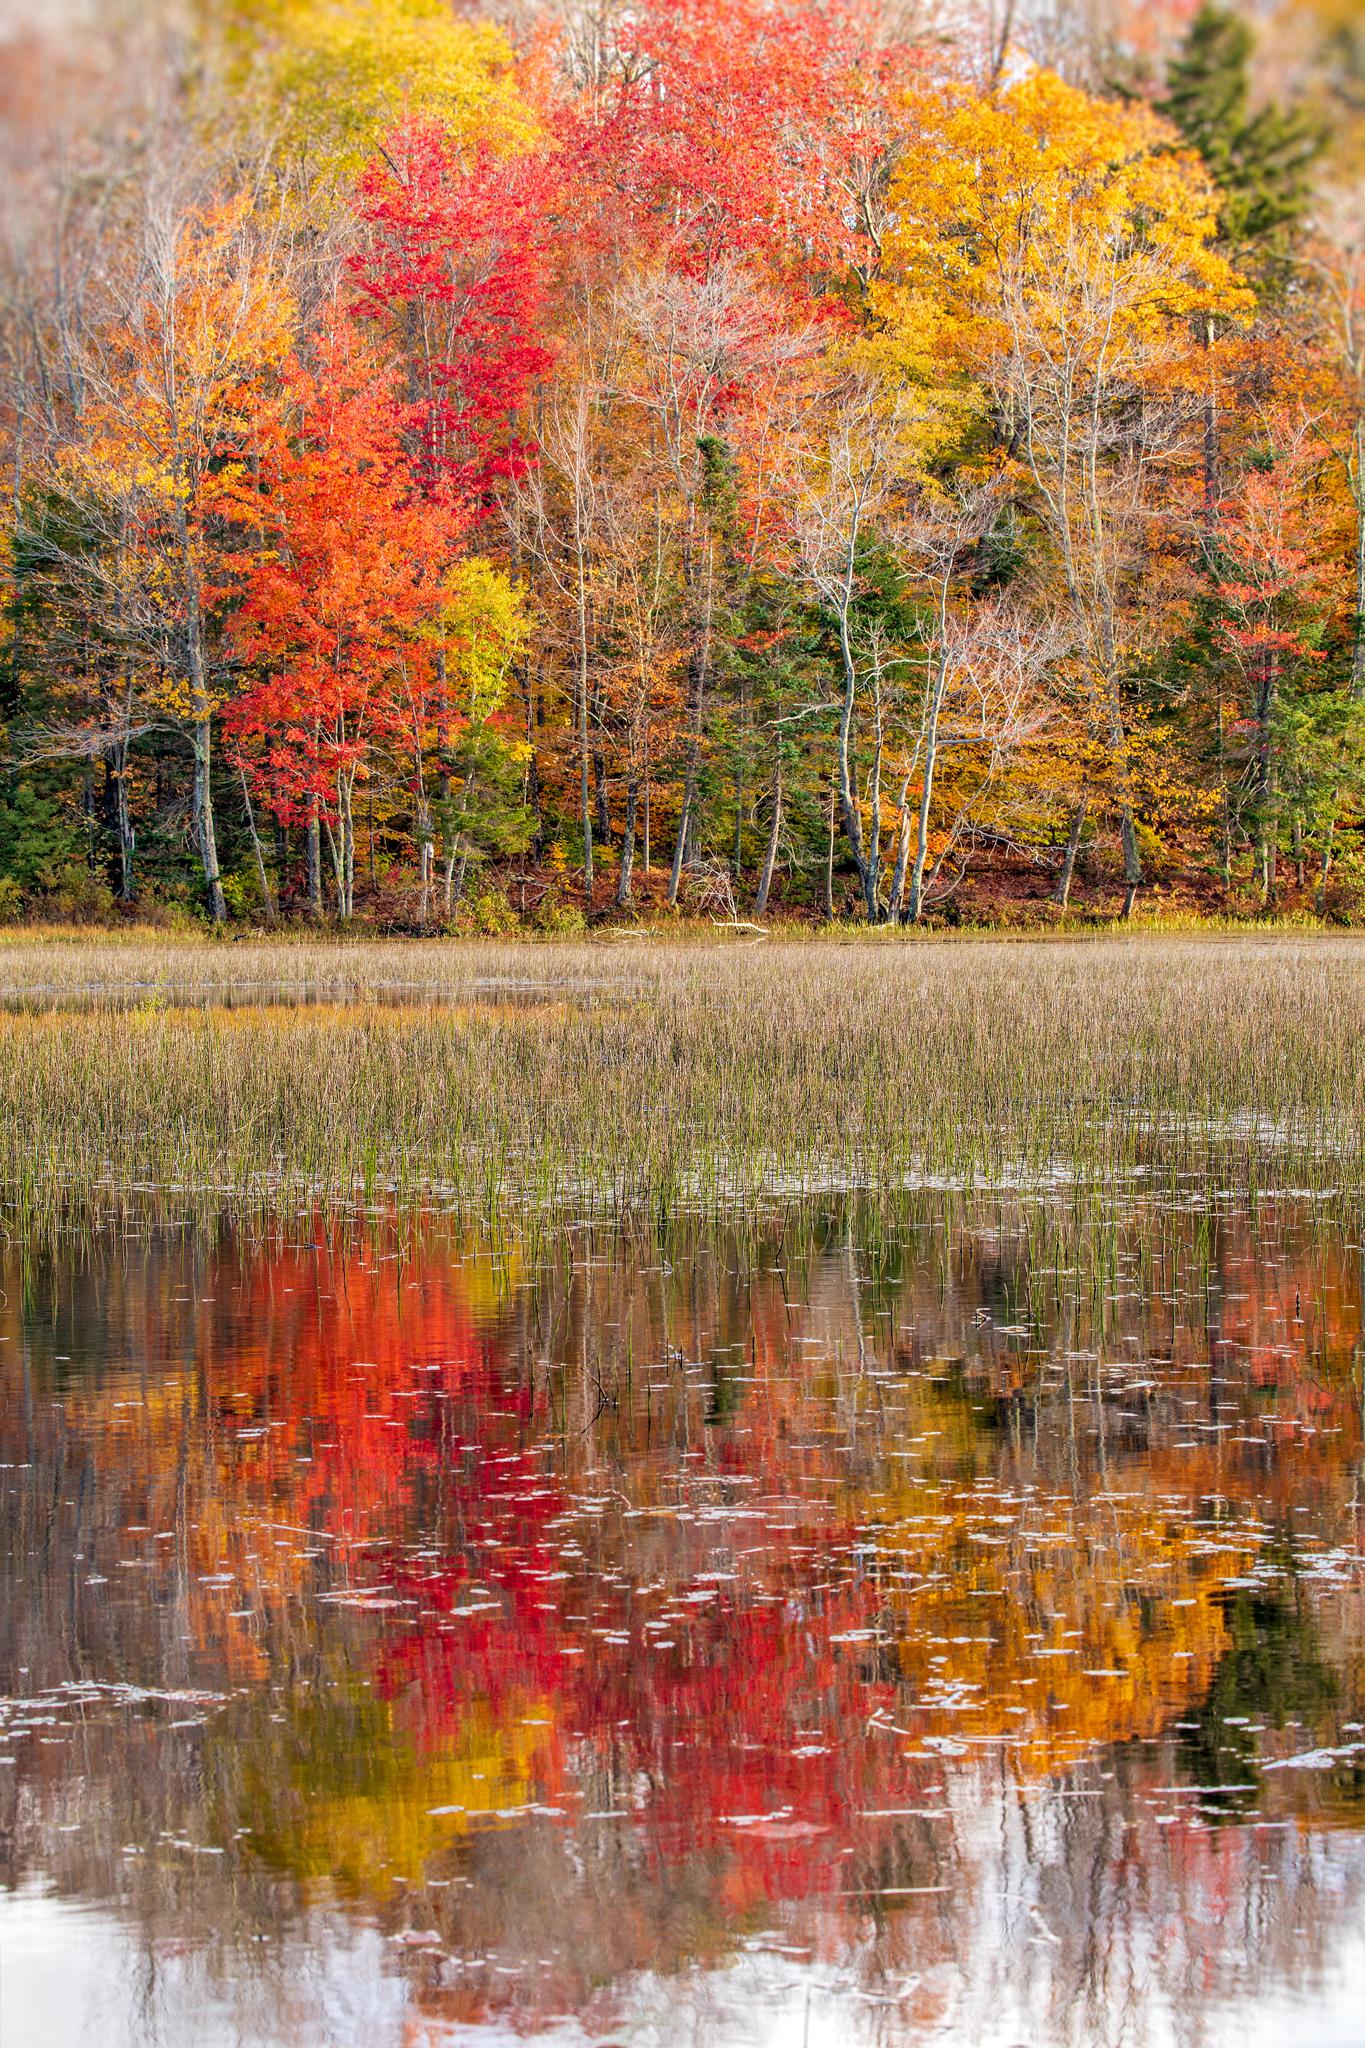 Landscape Photograph Alexandra Steedman - « Past Peak », photographie de nature couleur, paysage, arbres, automne, feuillage d'automne